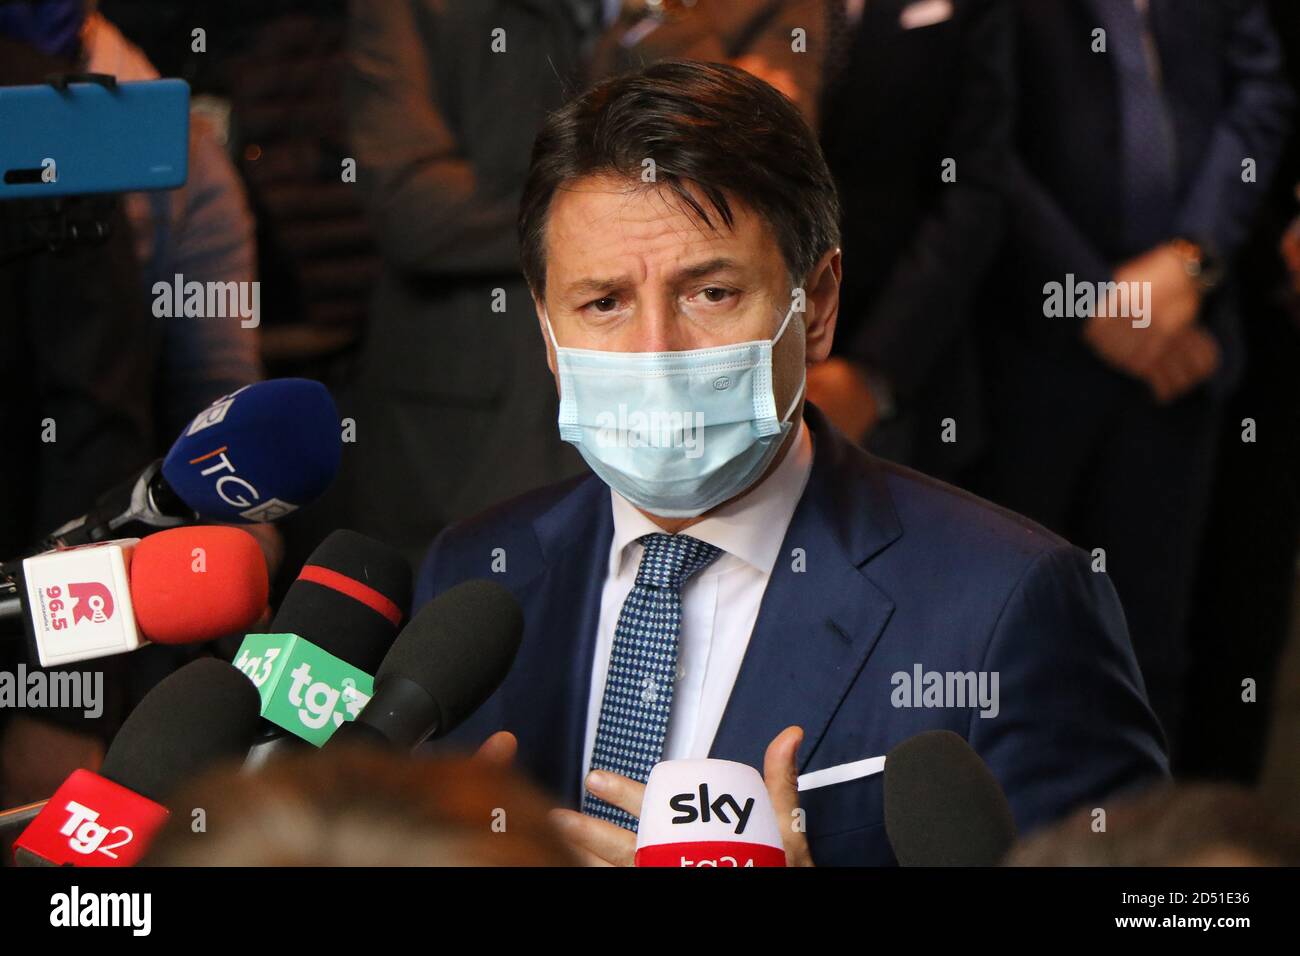 Le Premier ministre italien Giuseppe Conte lors d'une interview à la presse. Taranto, Puglia, Italie Banque D'Images